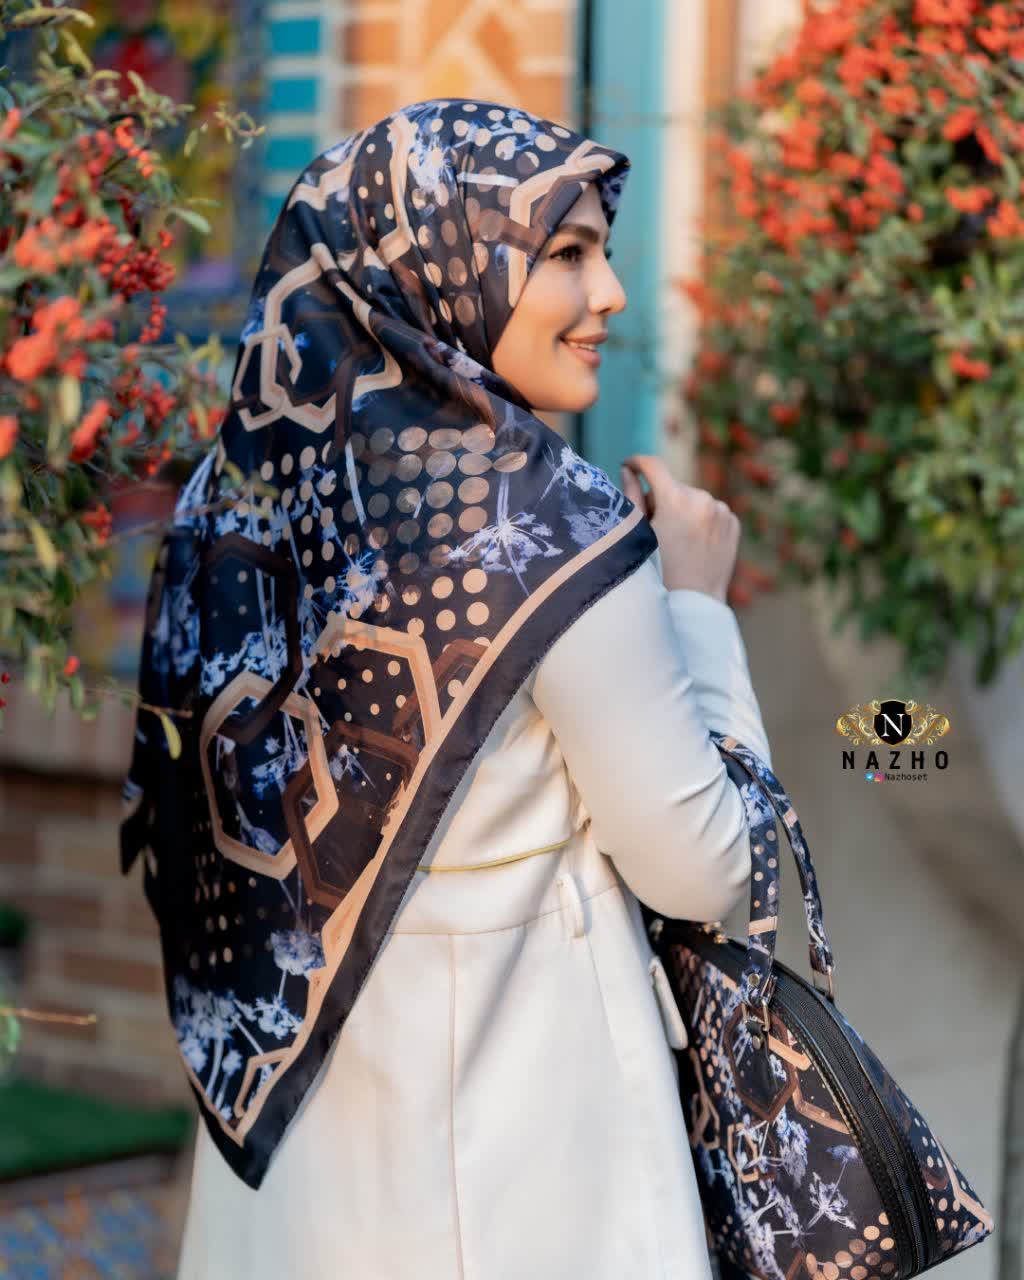 ست کیف و روسری زنانه طرحدار شیک با کیف نیمگرد با ارسال رایگان کد na133